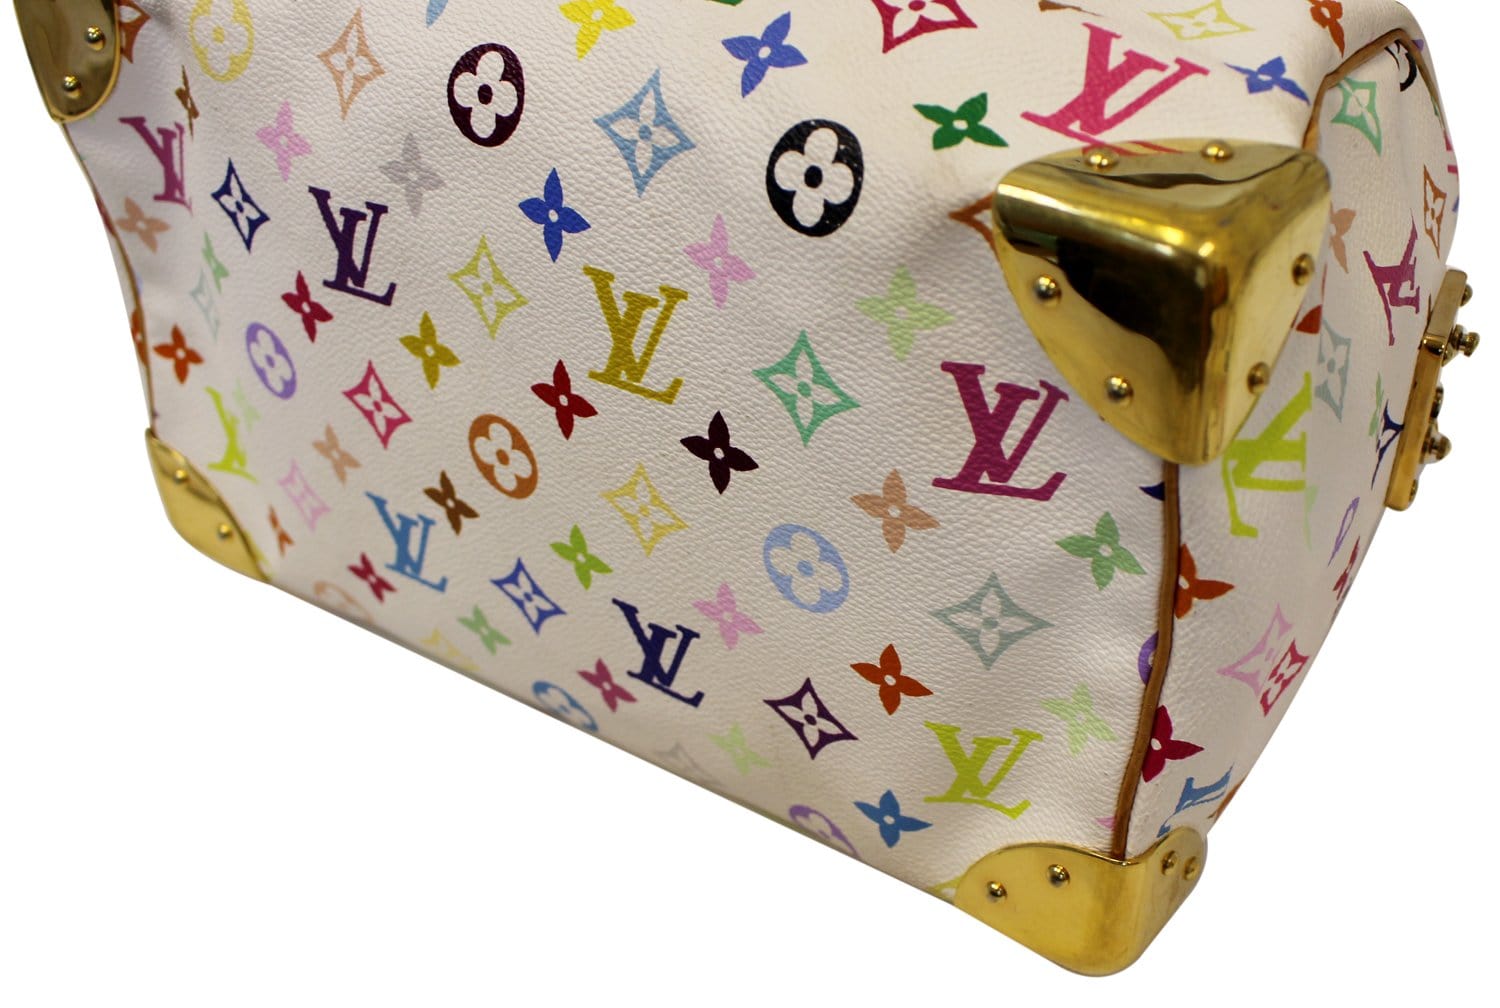 LOUIS VUITTON Monogram Speedy 30 Satchel Bag – Fashion Reloved